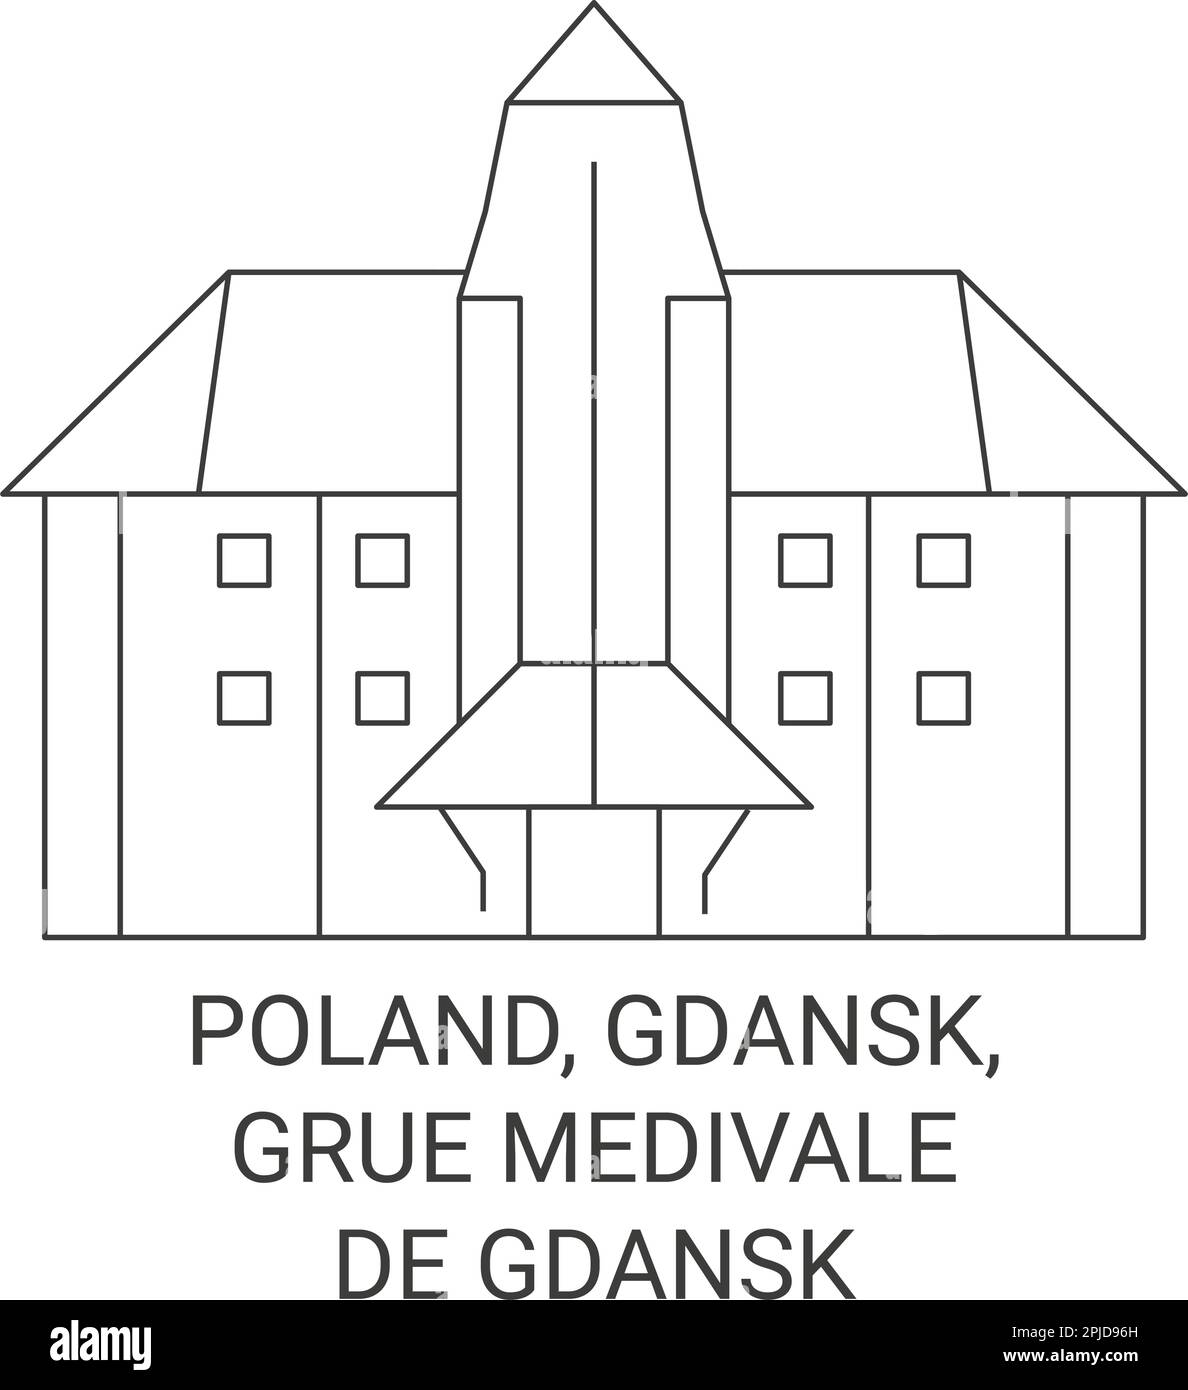 Poland, Gdansk, Grue Medivale travel landmark vector illustration Stock Vector